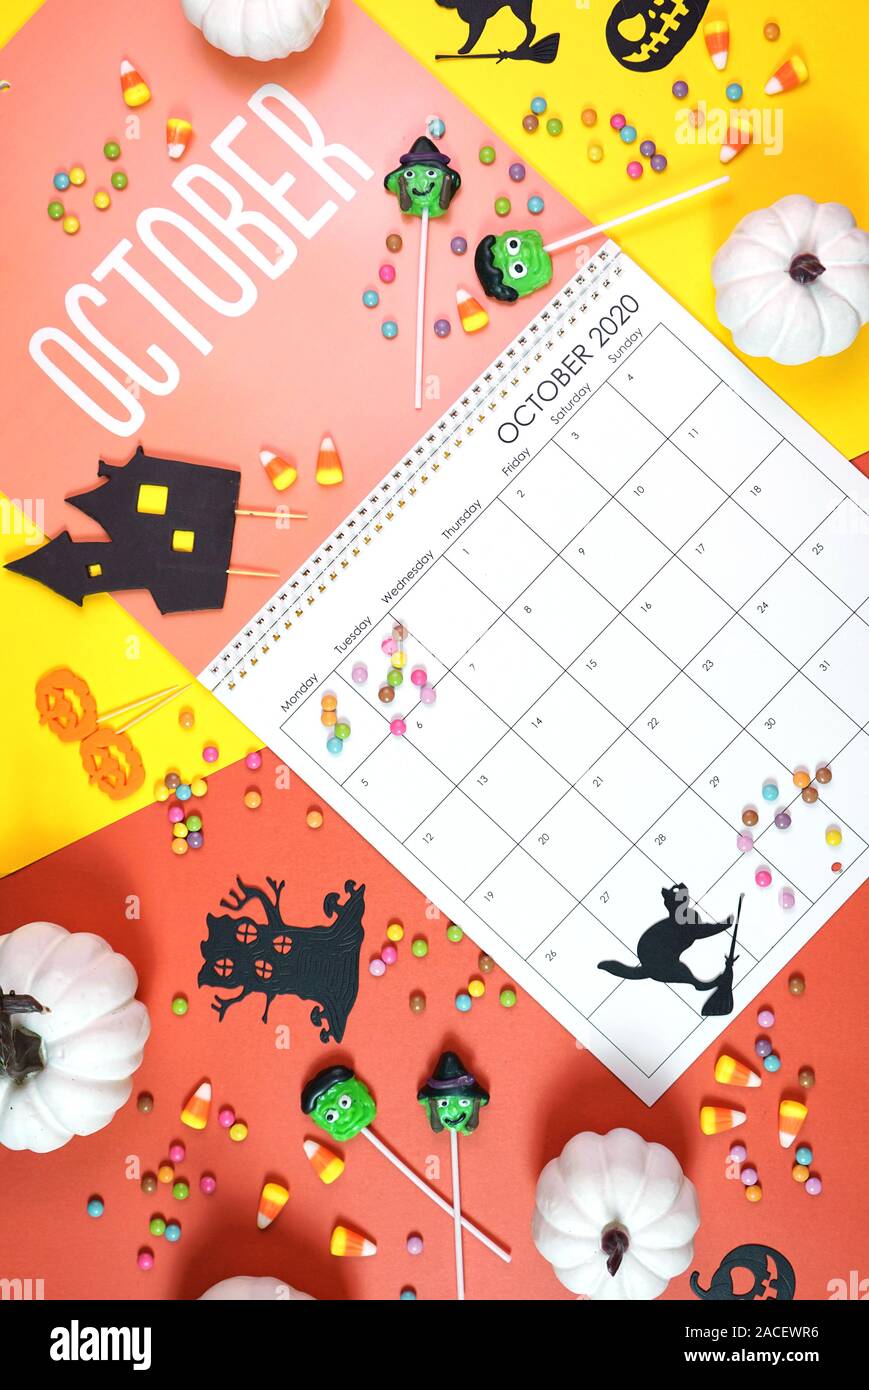 Sul trend 2020 pagina del calendario per il mese di ottobre moderni laici piatta con cucina di stagione, caramelle e decorazioni colorate in popular colori pastello. Vert Foto Stock